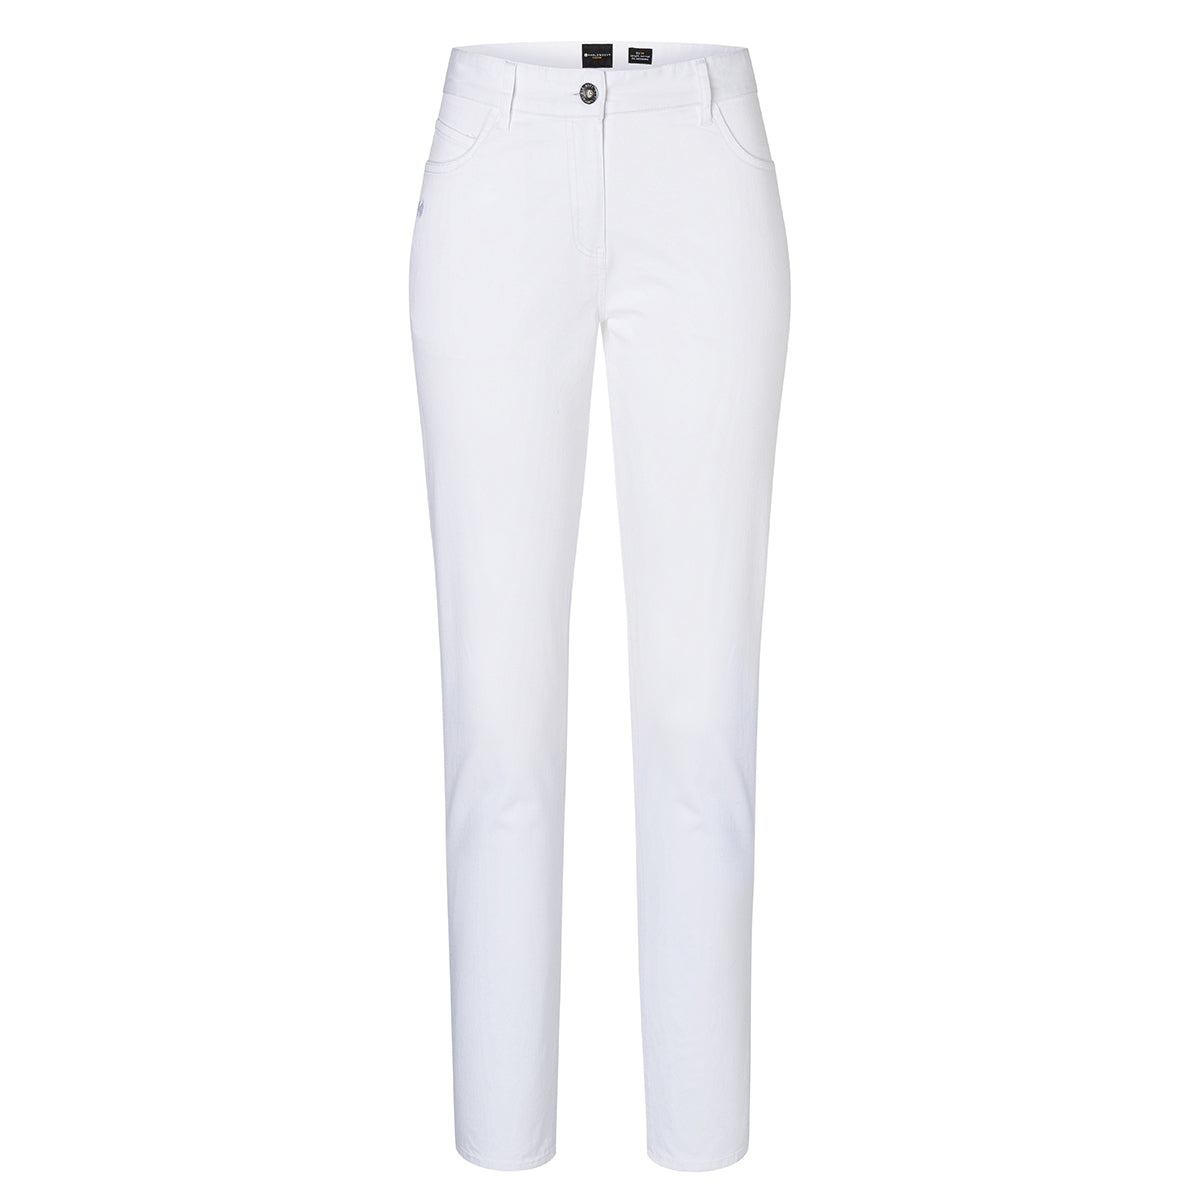 Karlowsky - 5-lomme bukser til damer - Hvid - Størrelse: 44